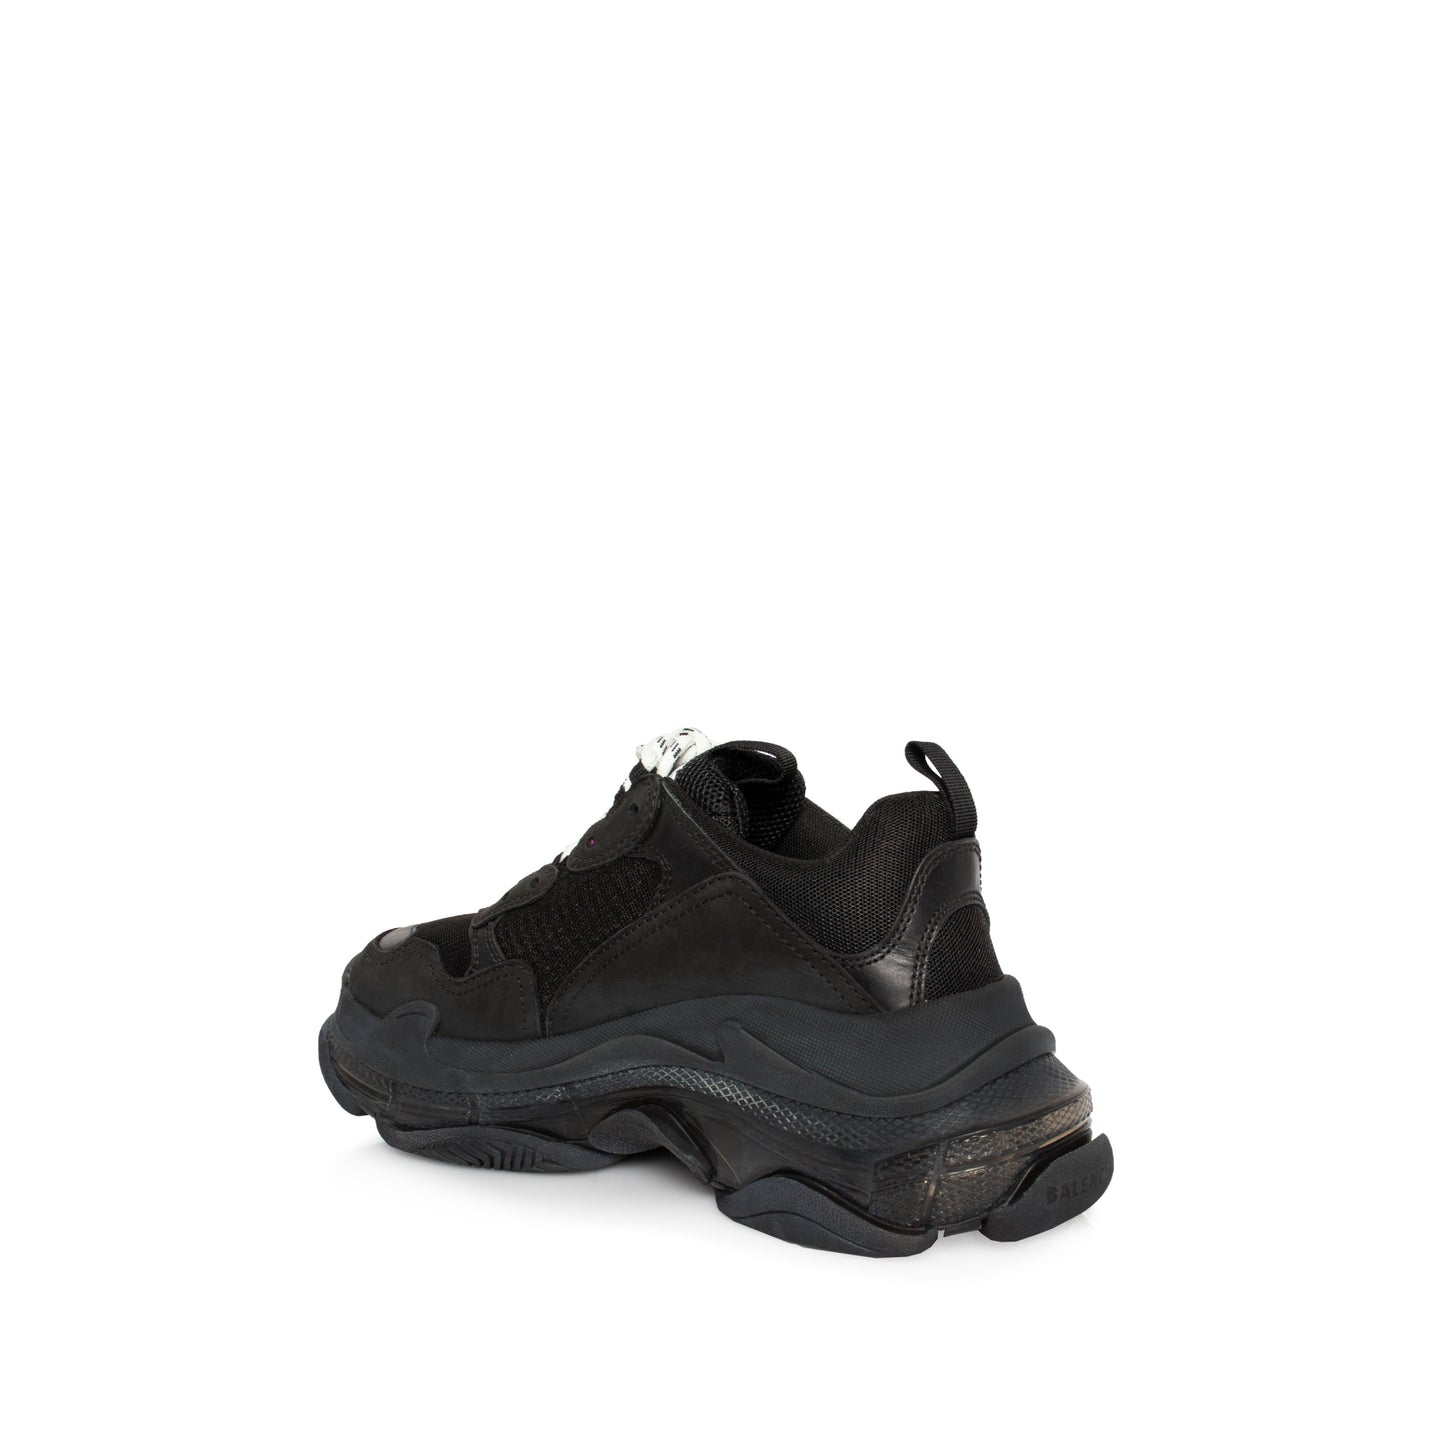 Triple S Clear Sole Sneaker in Black/Grey